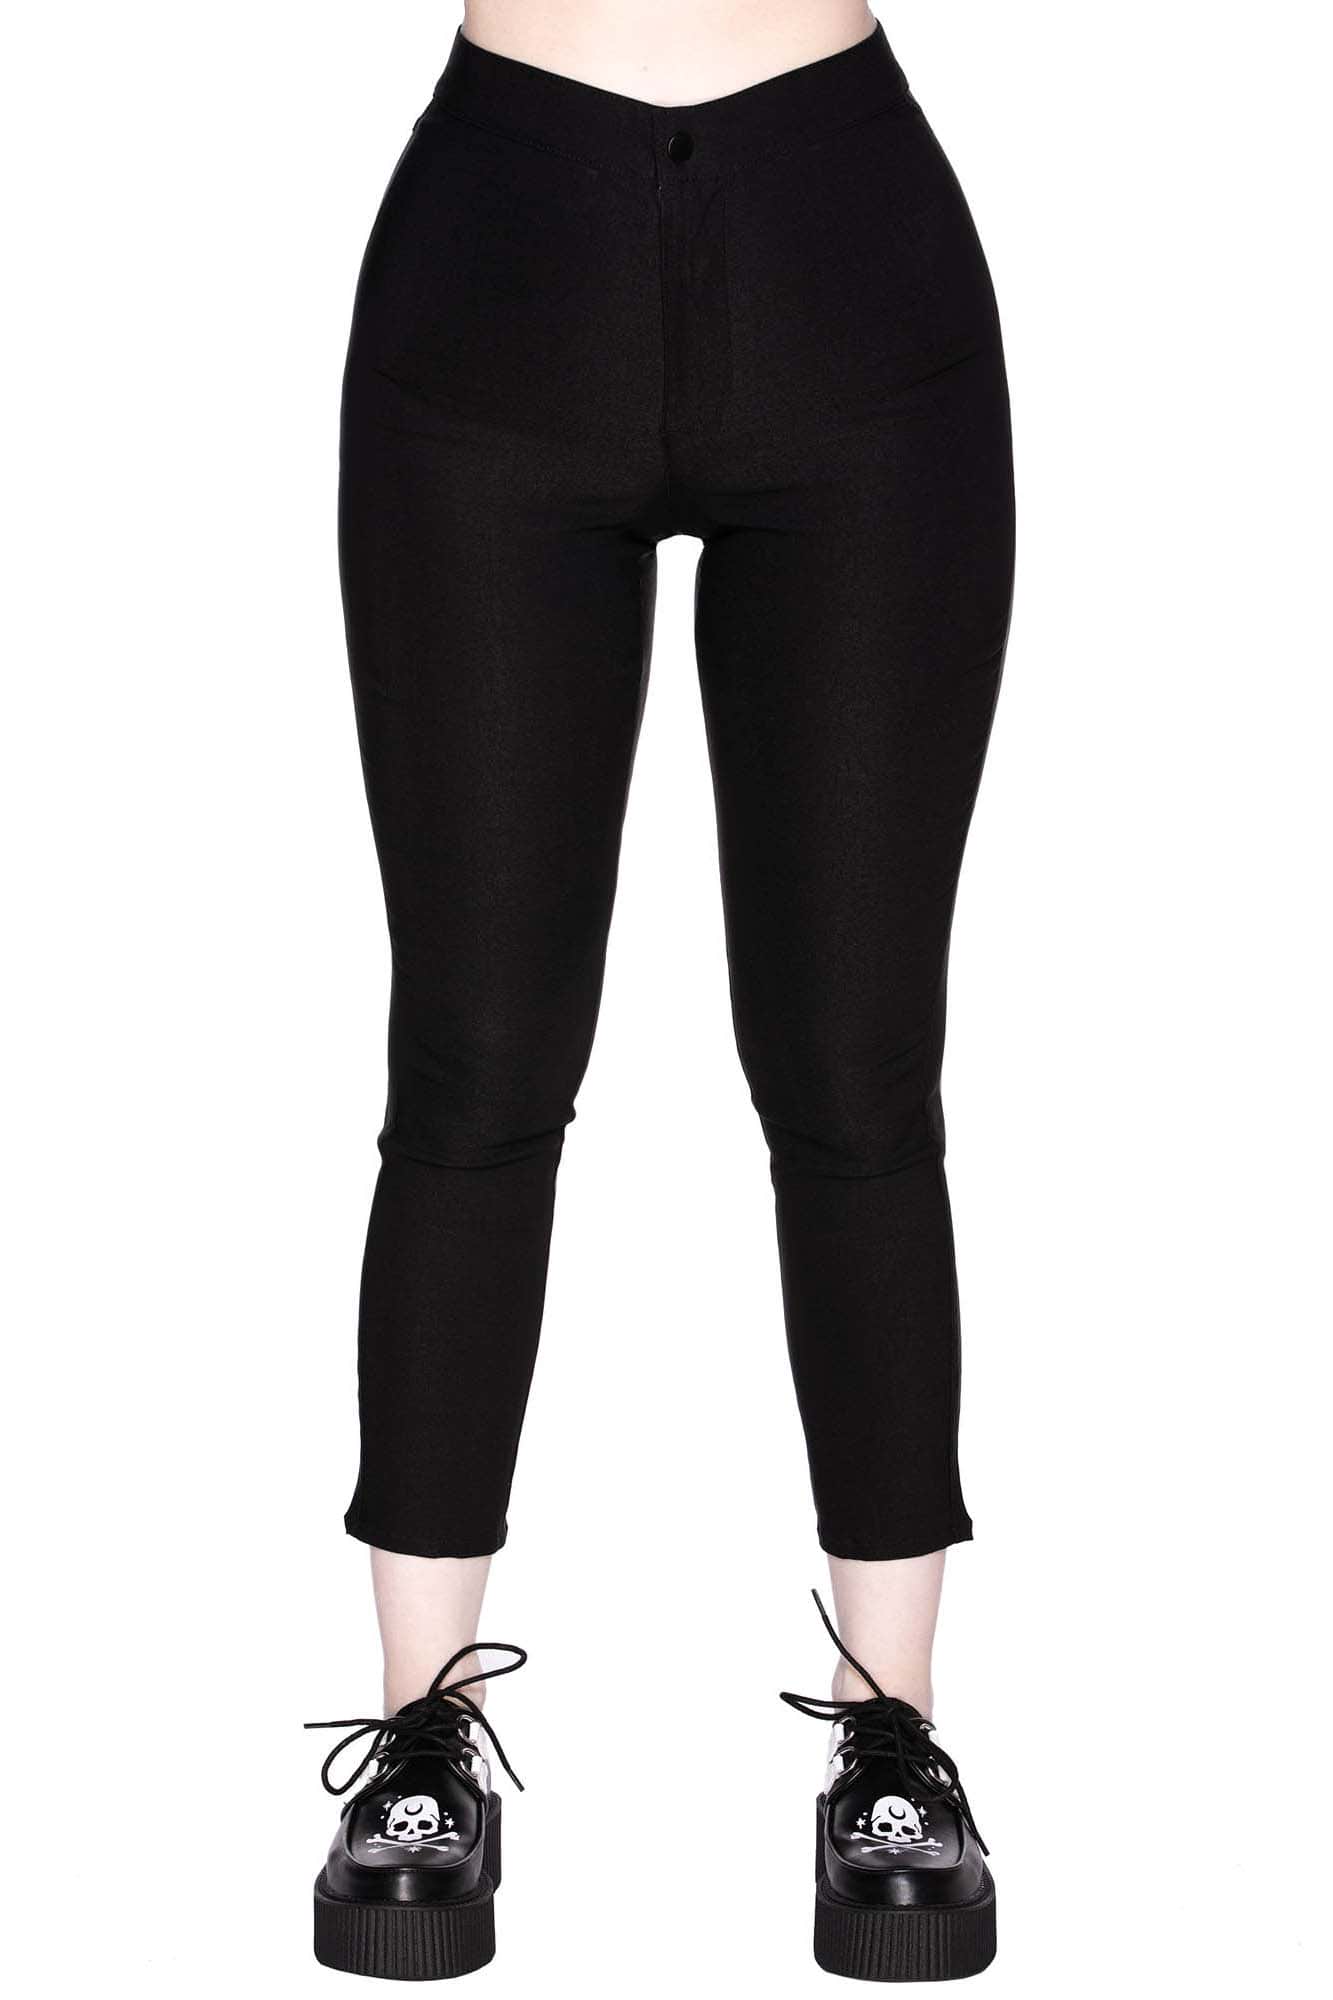 Befli Womens Skinny Fit 34 Capris Leggings Combo Pack of 2 Black Light Skin